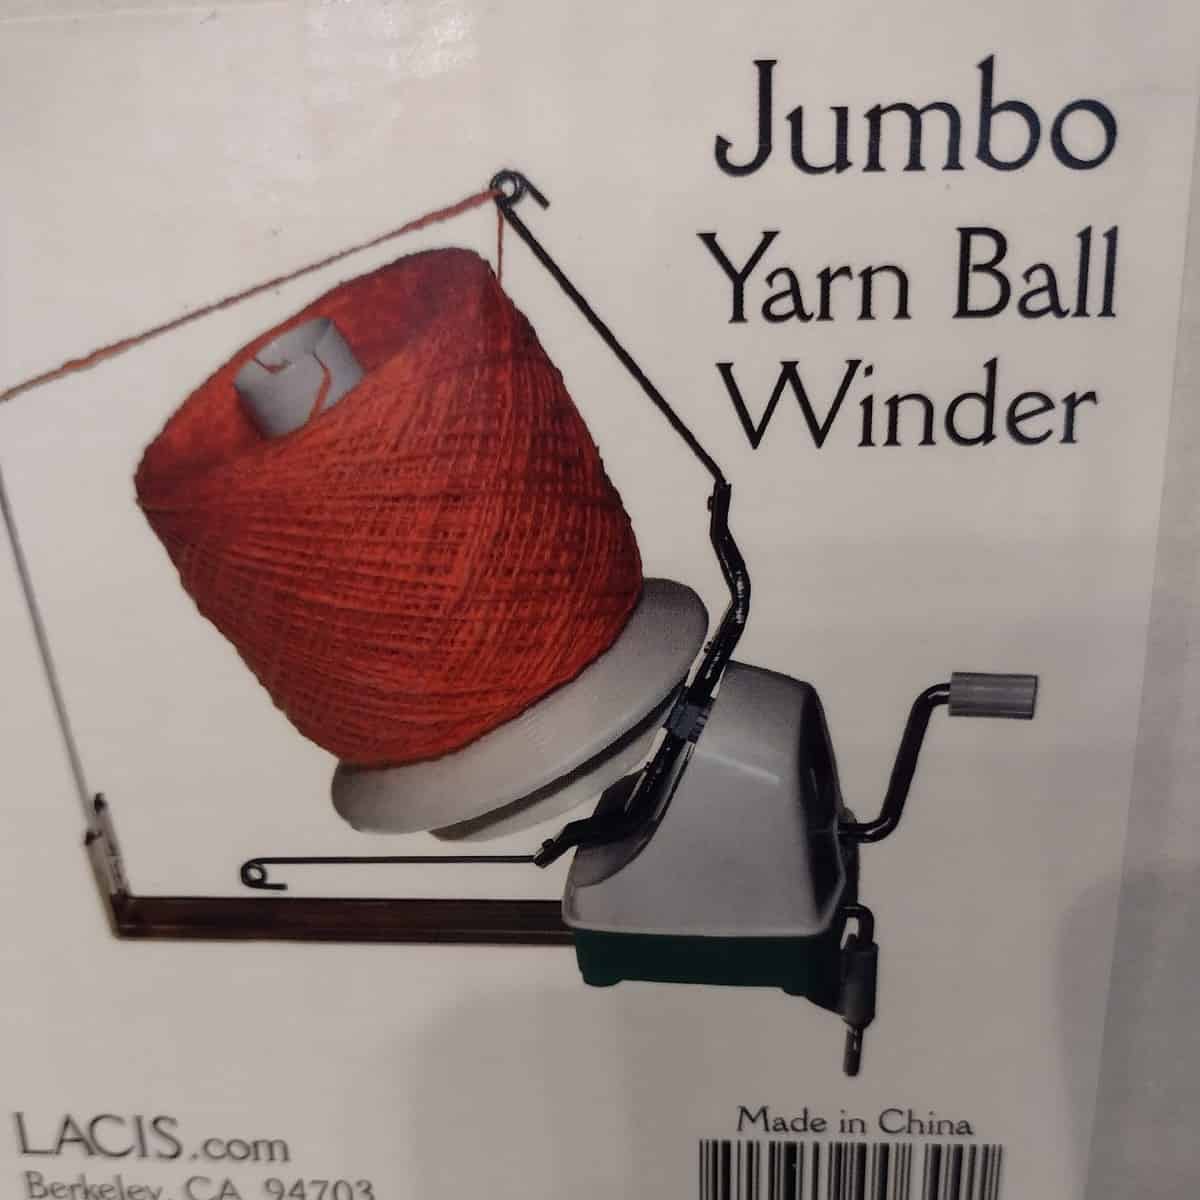 Jumbo Yarn Ball Winder (Lacis)